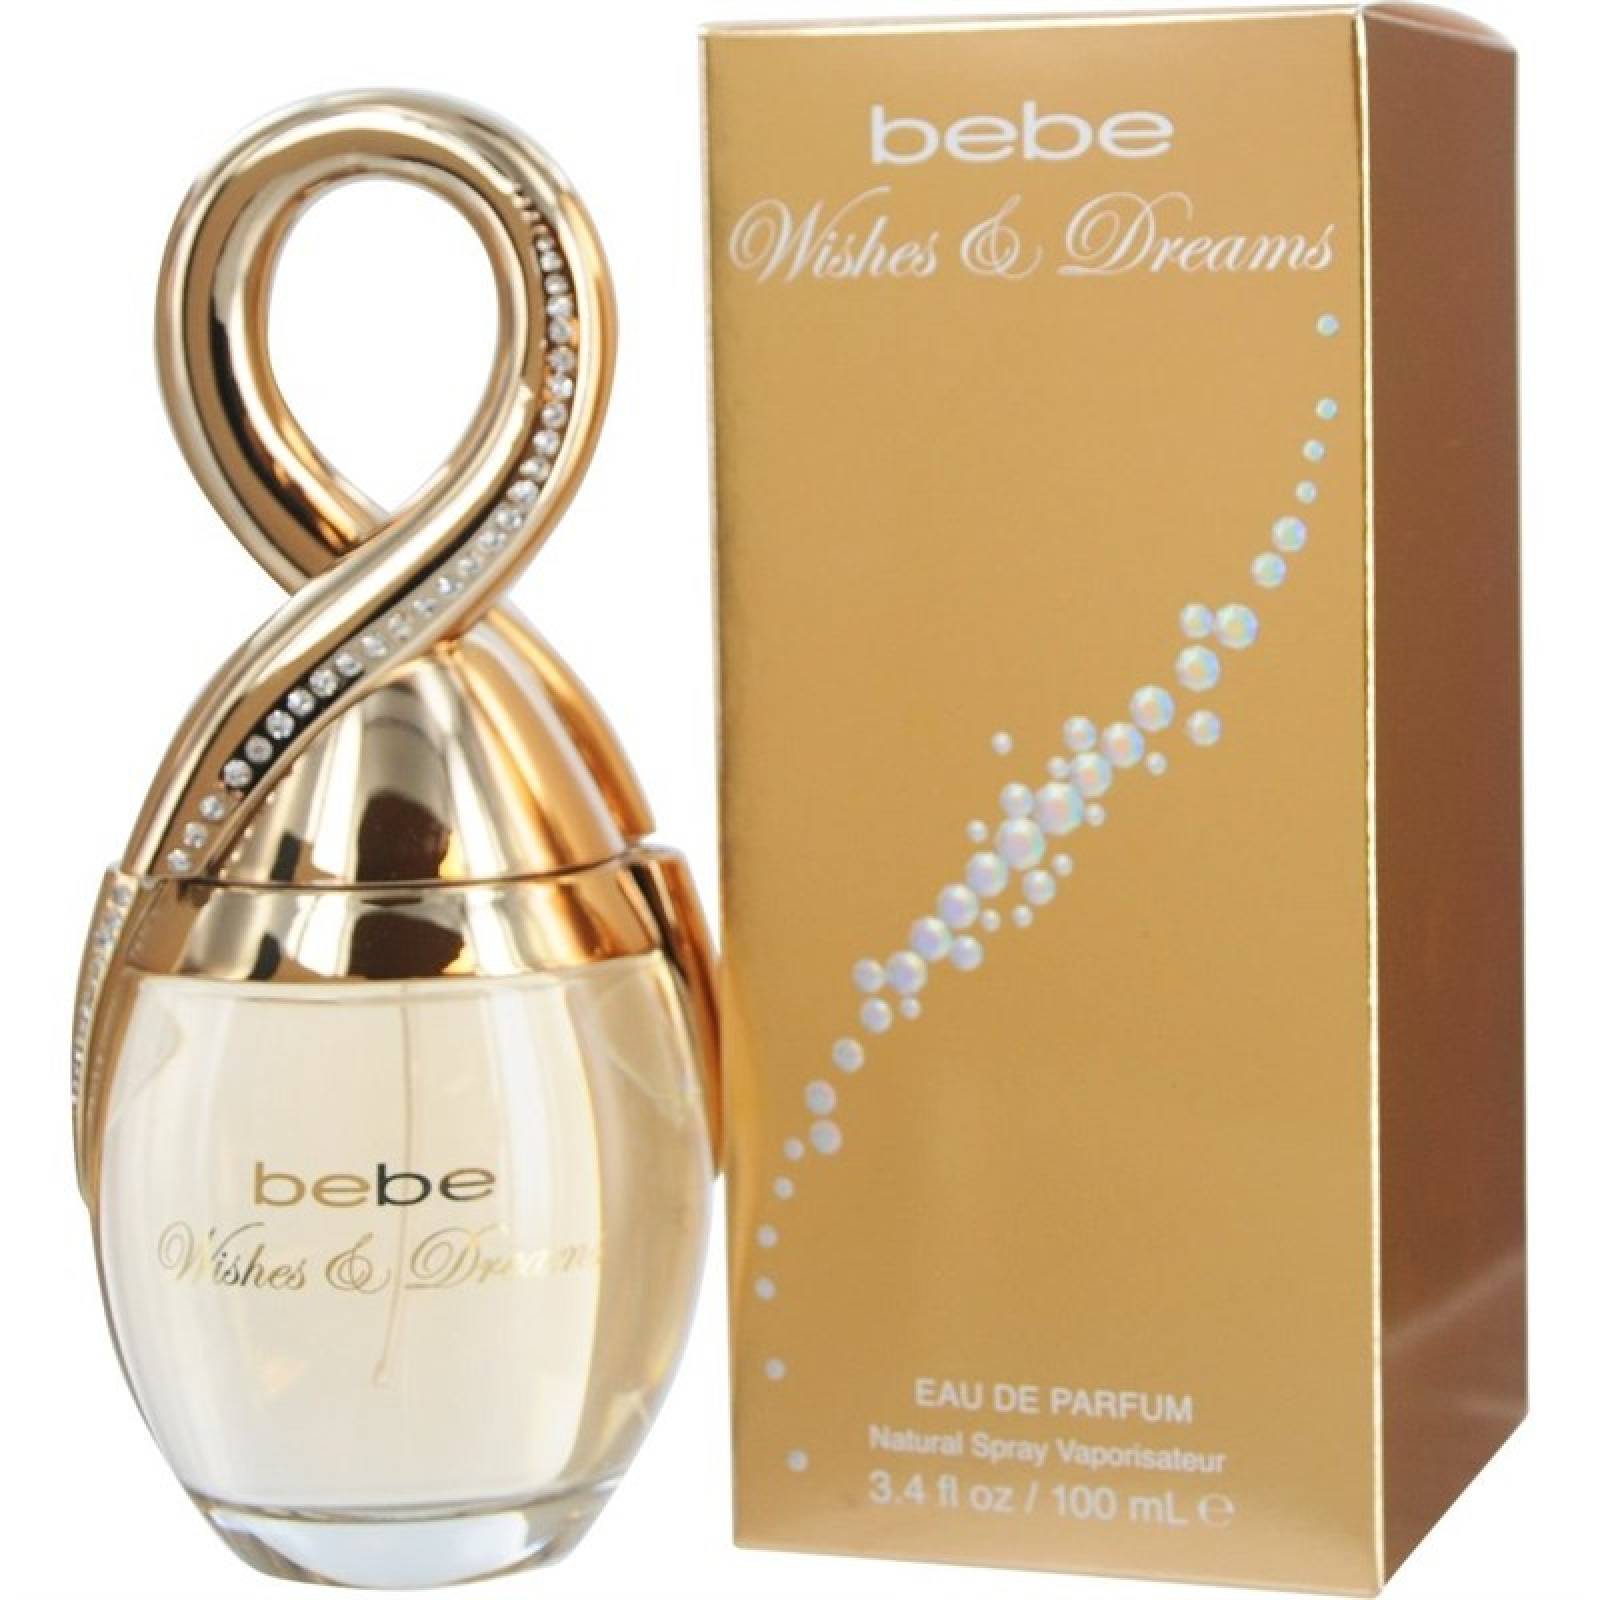 Bebe Wishes & Dreams de Bebe Eau de Parfum 100 ml Fragancia para Dama